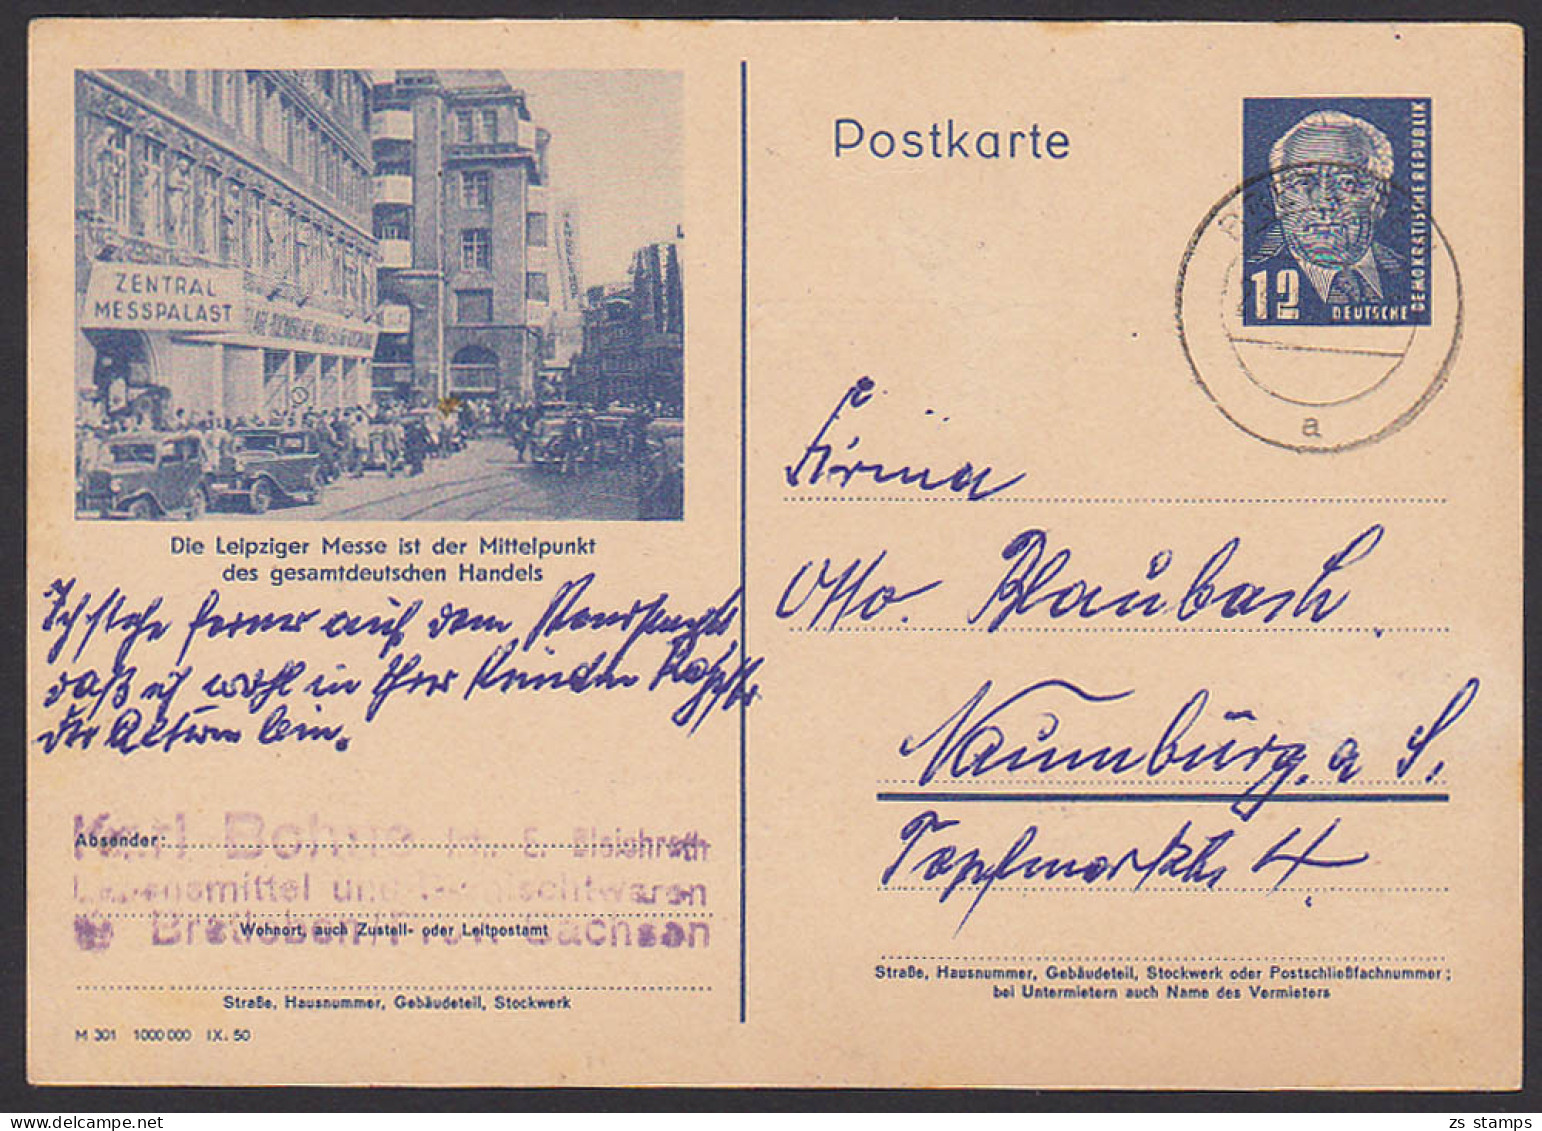 Leipzig Zentral Messepalast Bildpostkarte 12 Pfg. W. Pieck GA P47 /03, Mittelpunkt Es Gesamtdeutschen Handels - Postkarten - Gebraucht